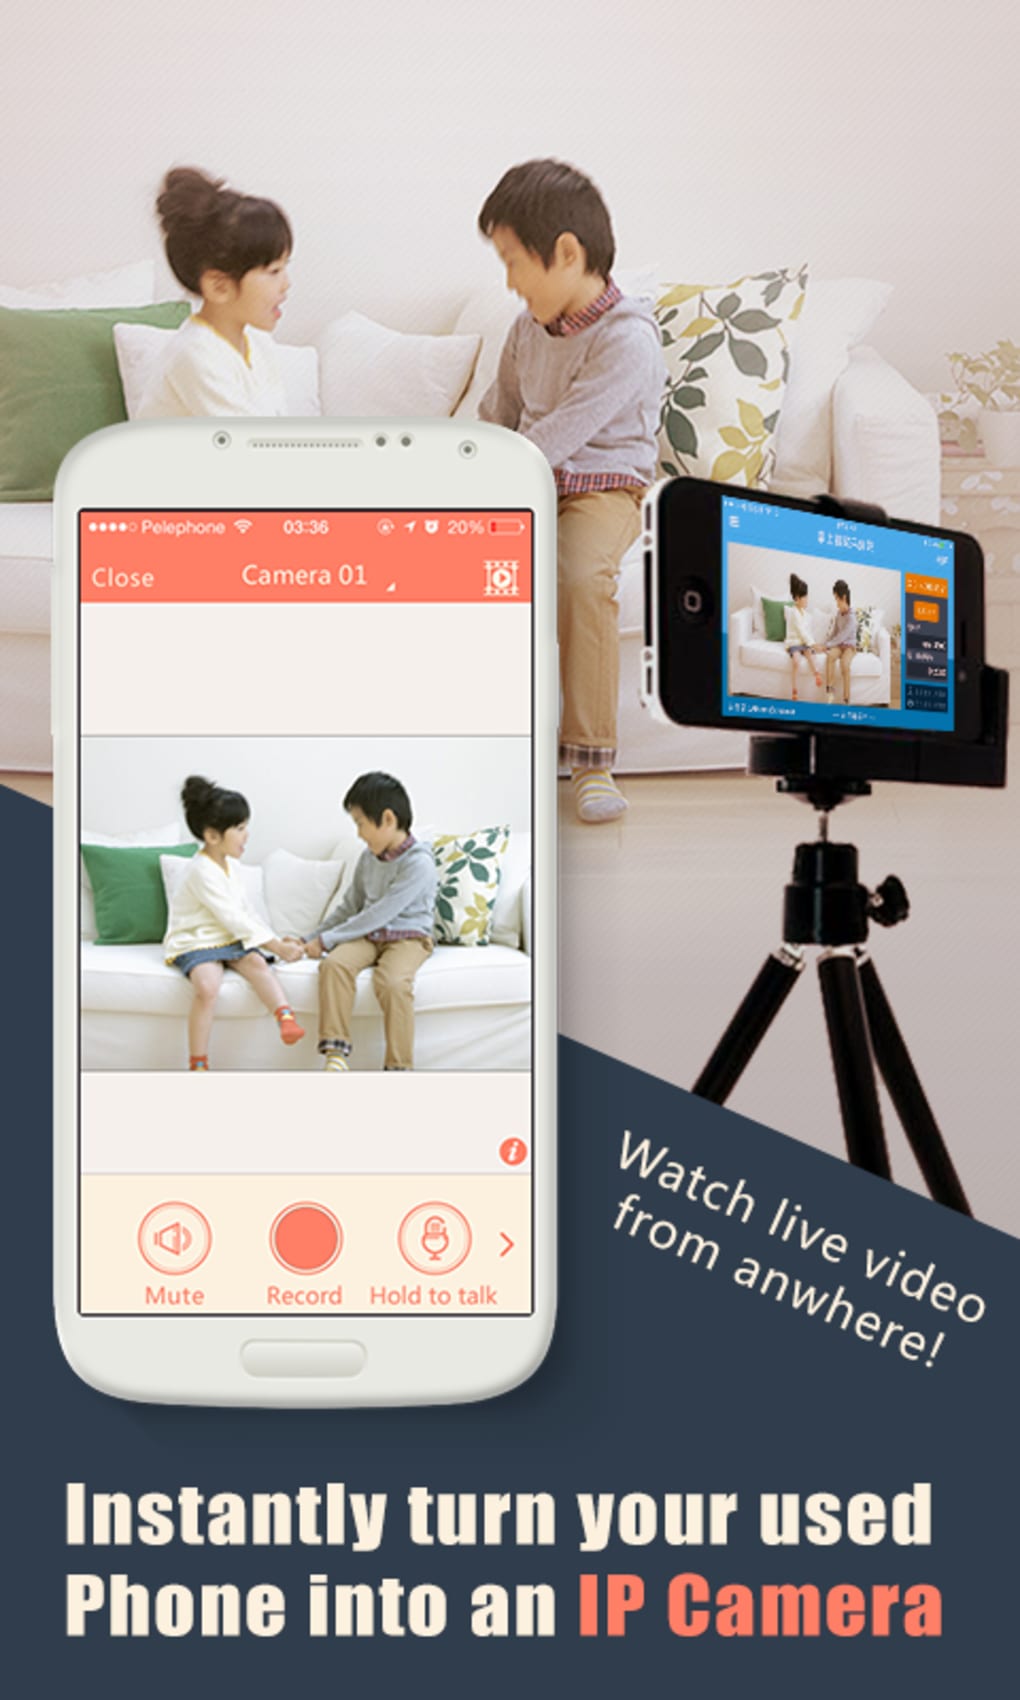 athome video streamer app